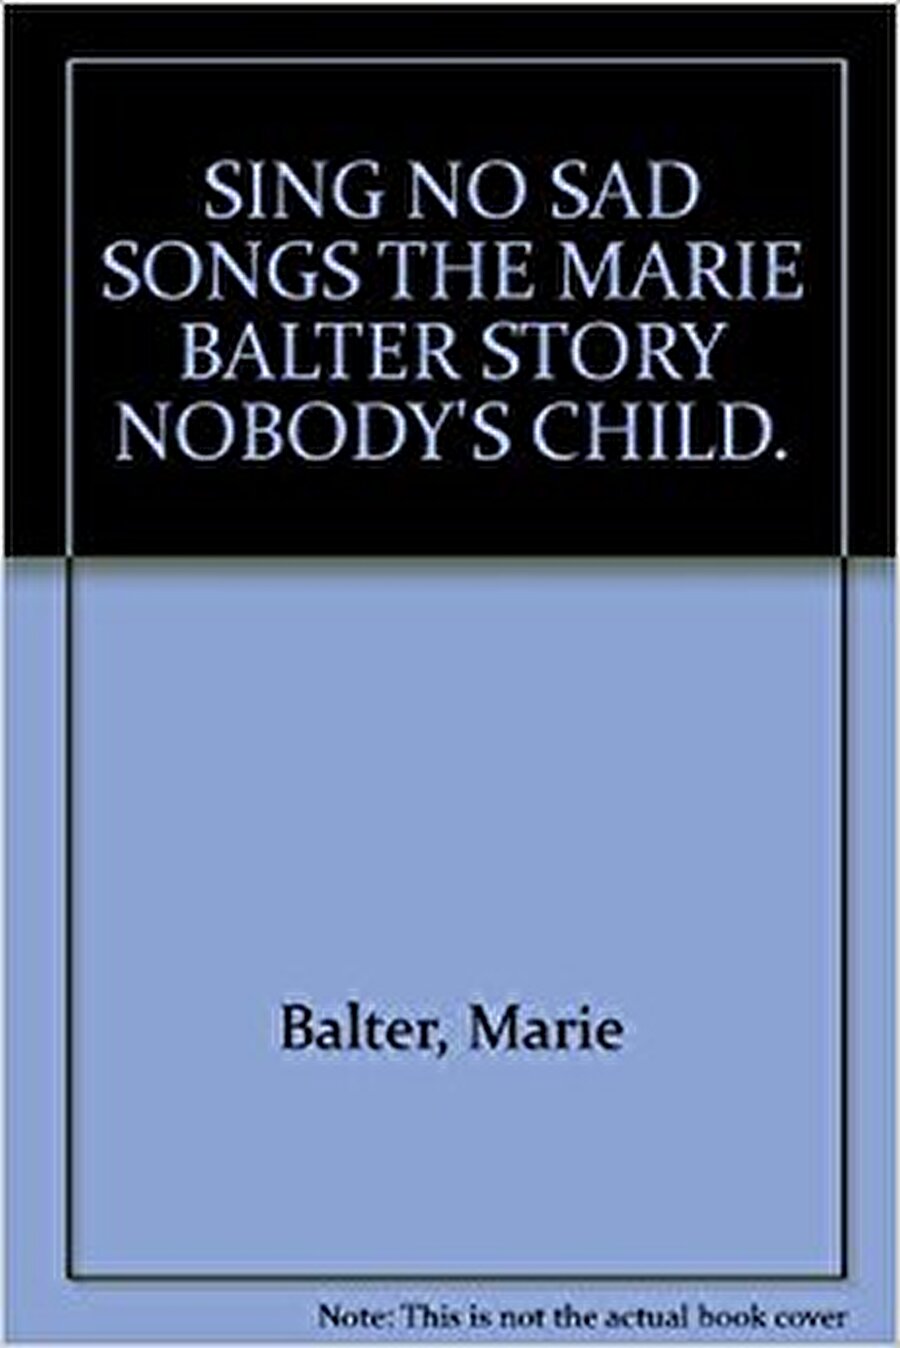 Hayatını yazdı

                                    
                                    
                                    Marie Rose Balter hikayesini kaleme aldığı “Sing No Sad Songs” isimli bir kitap yazdı. Kitabın gelirini ise bağışladı. 
                                
                                
                                